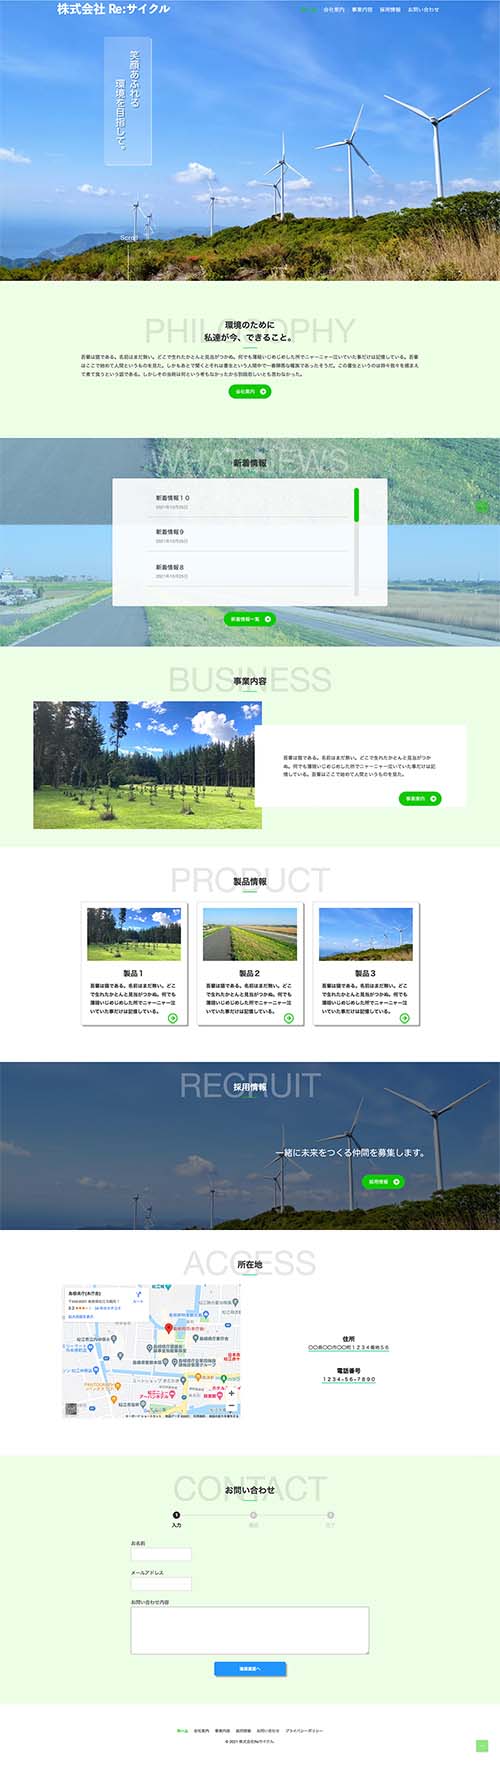 架空のリサイクル企業ウェブサイトのトップページ画像